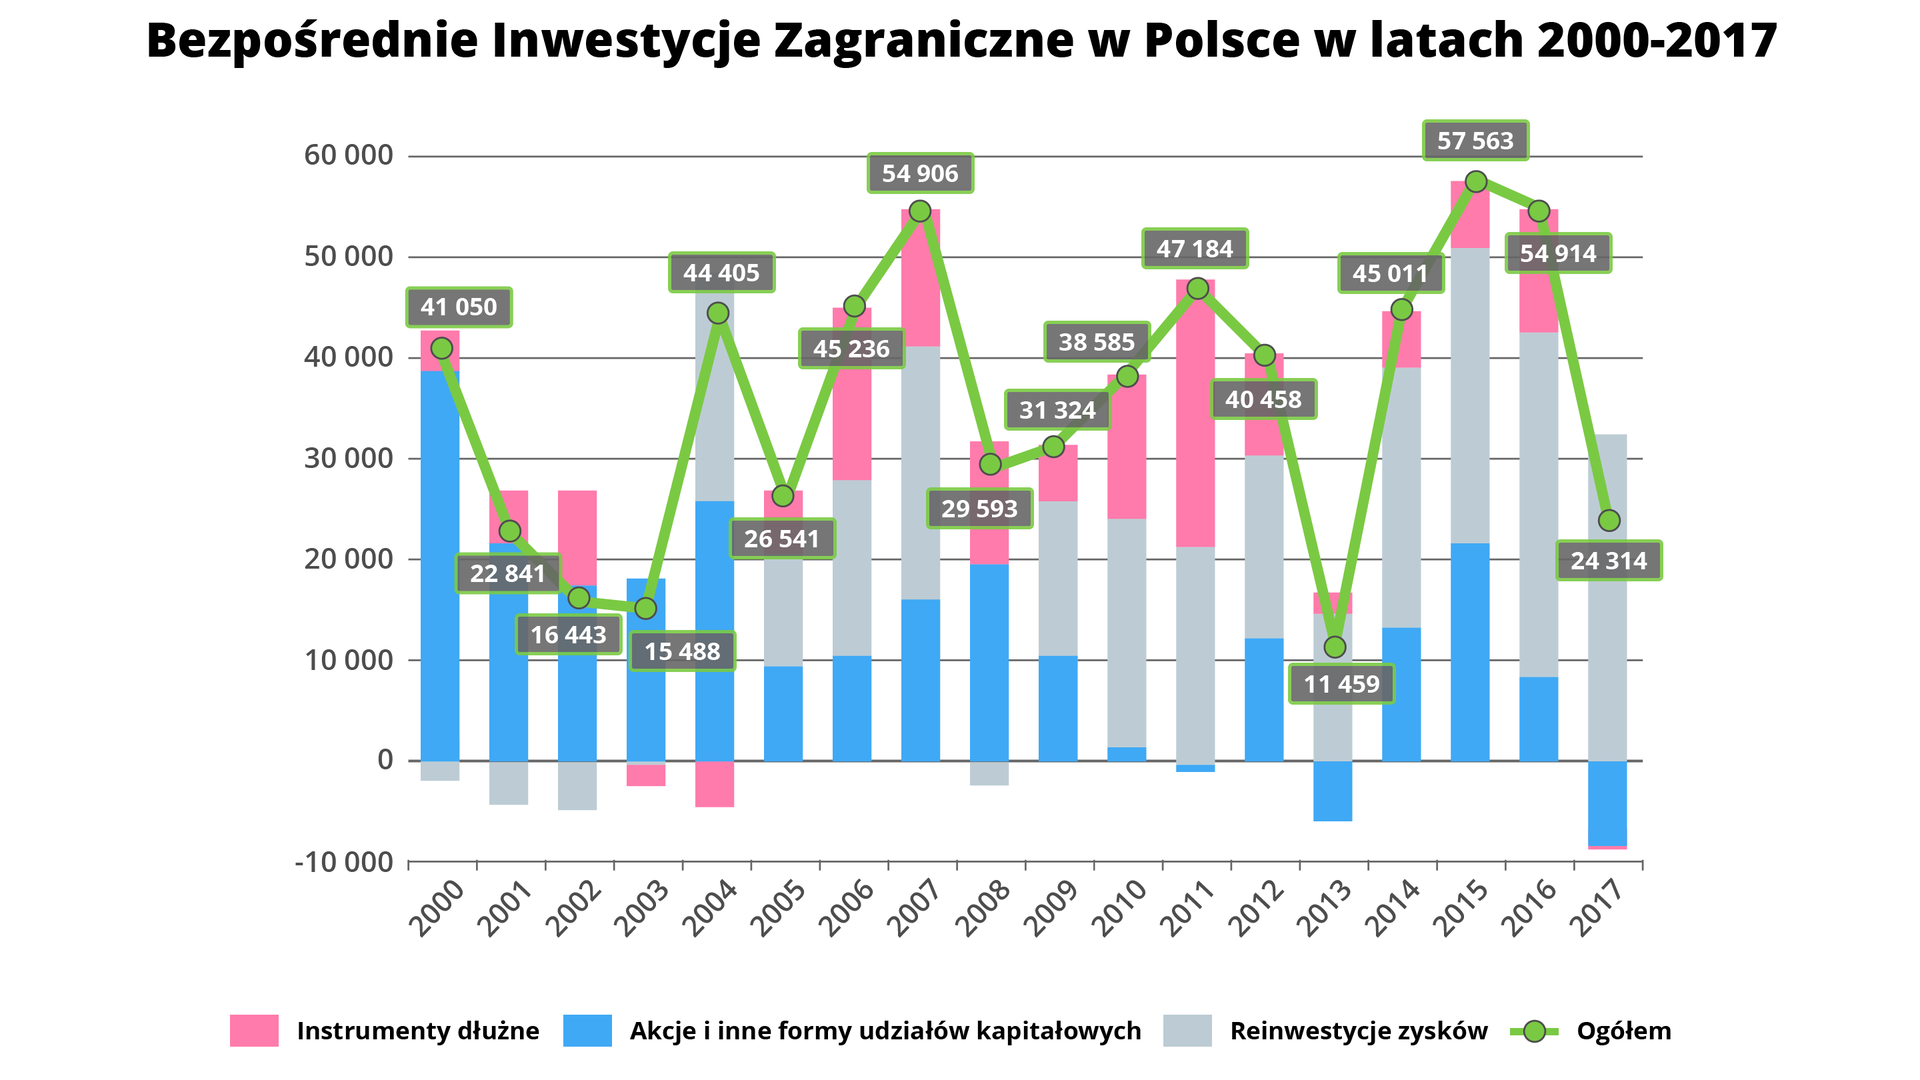 Wykres kolumnowy przedstawia Bezpośrednie Inwestycje Zagraniczne w Polsce w latach 2000-2017. Na osi X są lata, na osi Y wartości od 0 do 60 000. Pod uwagę wzięto instrumenty dłużne, akcje i inne formy udziałów kapitałowych, reinwestycje zysków oraz wartość ogółem. Kolumny osiągają wartości powyżej 50 000 w roku 2007, 2015 i 2016. Najwyższy wskaźnik przypada na rok 2015 z wynikiem ogółem 57 563. Najniższe wartości są w roku 2003 z wynikiem 15 488 i w roku 2013 - 11 459.  W roku 2013 akcje i inne formy udziałów kapitałowych są ujemne - wynoszą około minus 7000. Reinwestycje zysków wynoszą około 15 000, a instrumenty dłużne 1000. Wartość ogólna wynosi 11 459. W 2017 roku akcje i inne formy udziałów kapitałowych są ujemne, wynoszą około 9000. Instrumenty dłużne także mają wartość ujemną, bardzo niewielką. Natomiast reinwestycje zysków wynoszą około 32 000. Ogółem 24 314.     